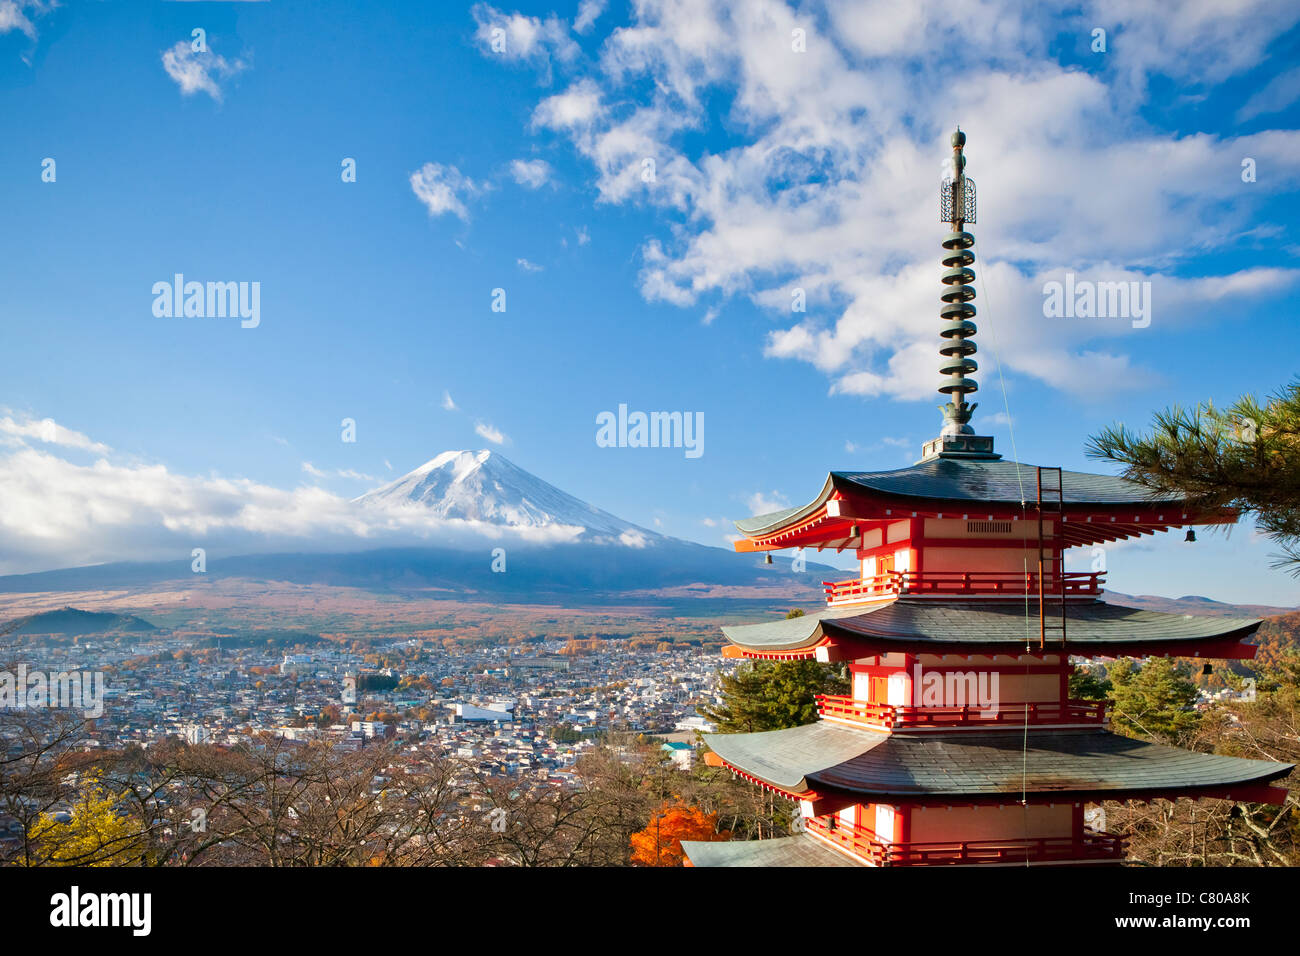 Pagoda overlooking  Mount Fuji and Fujiyoshida city, Japan Stock Photo